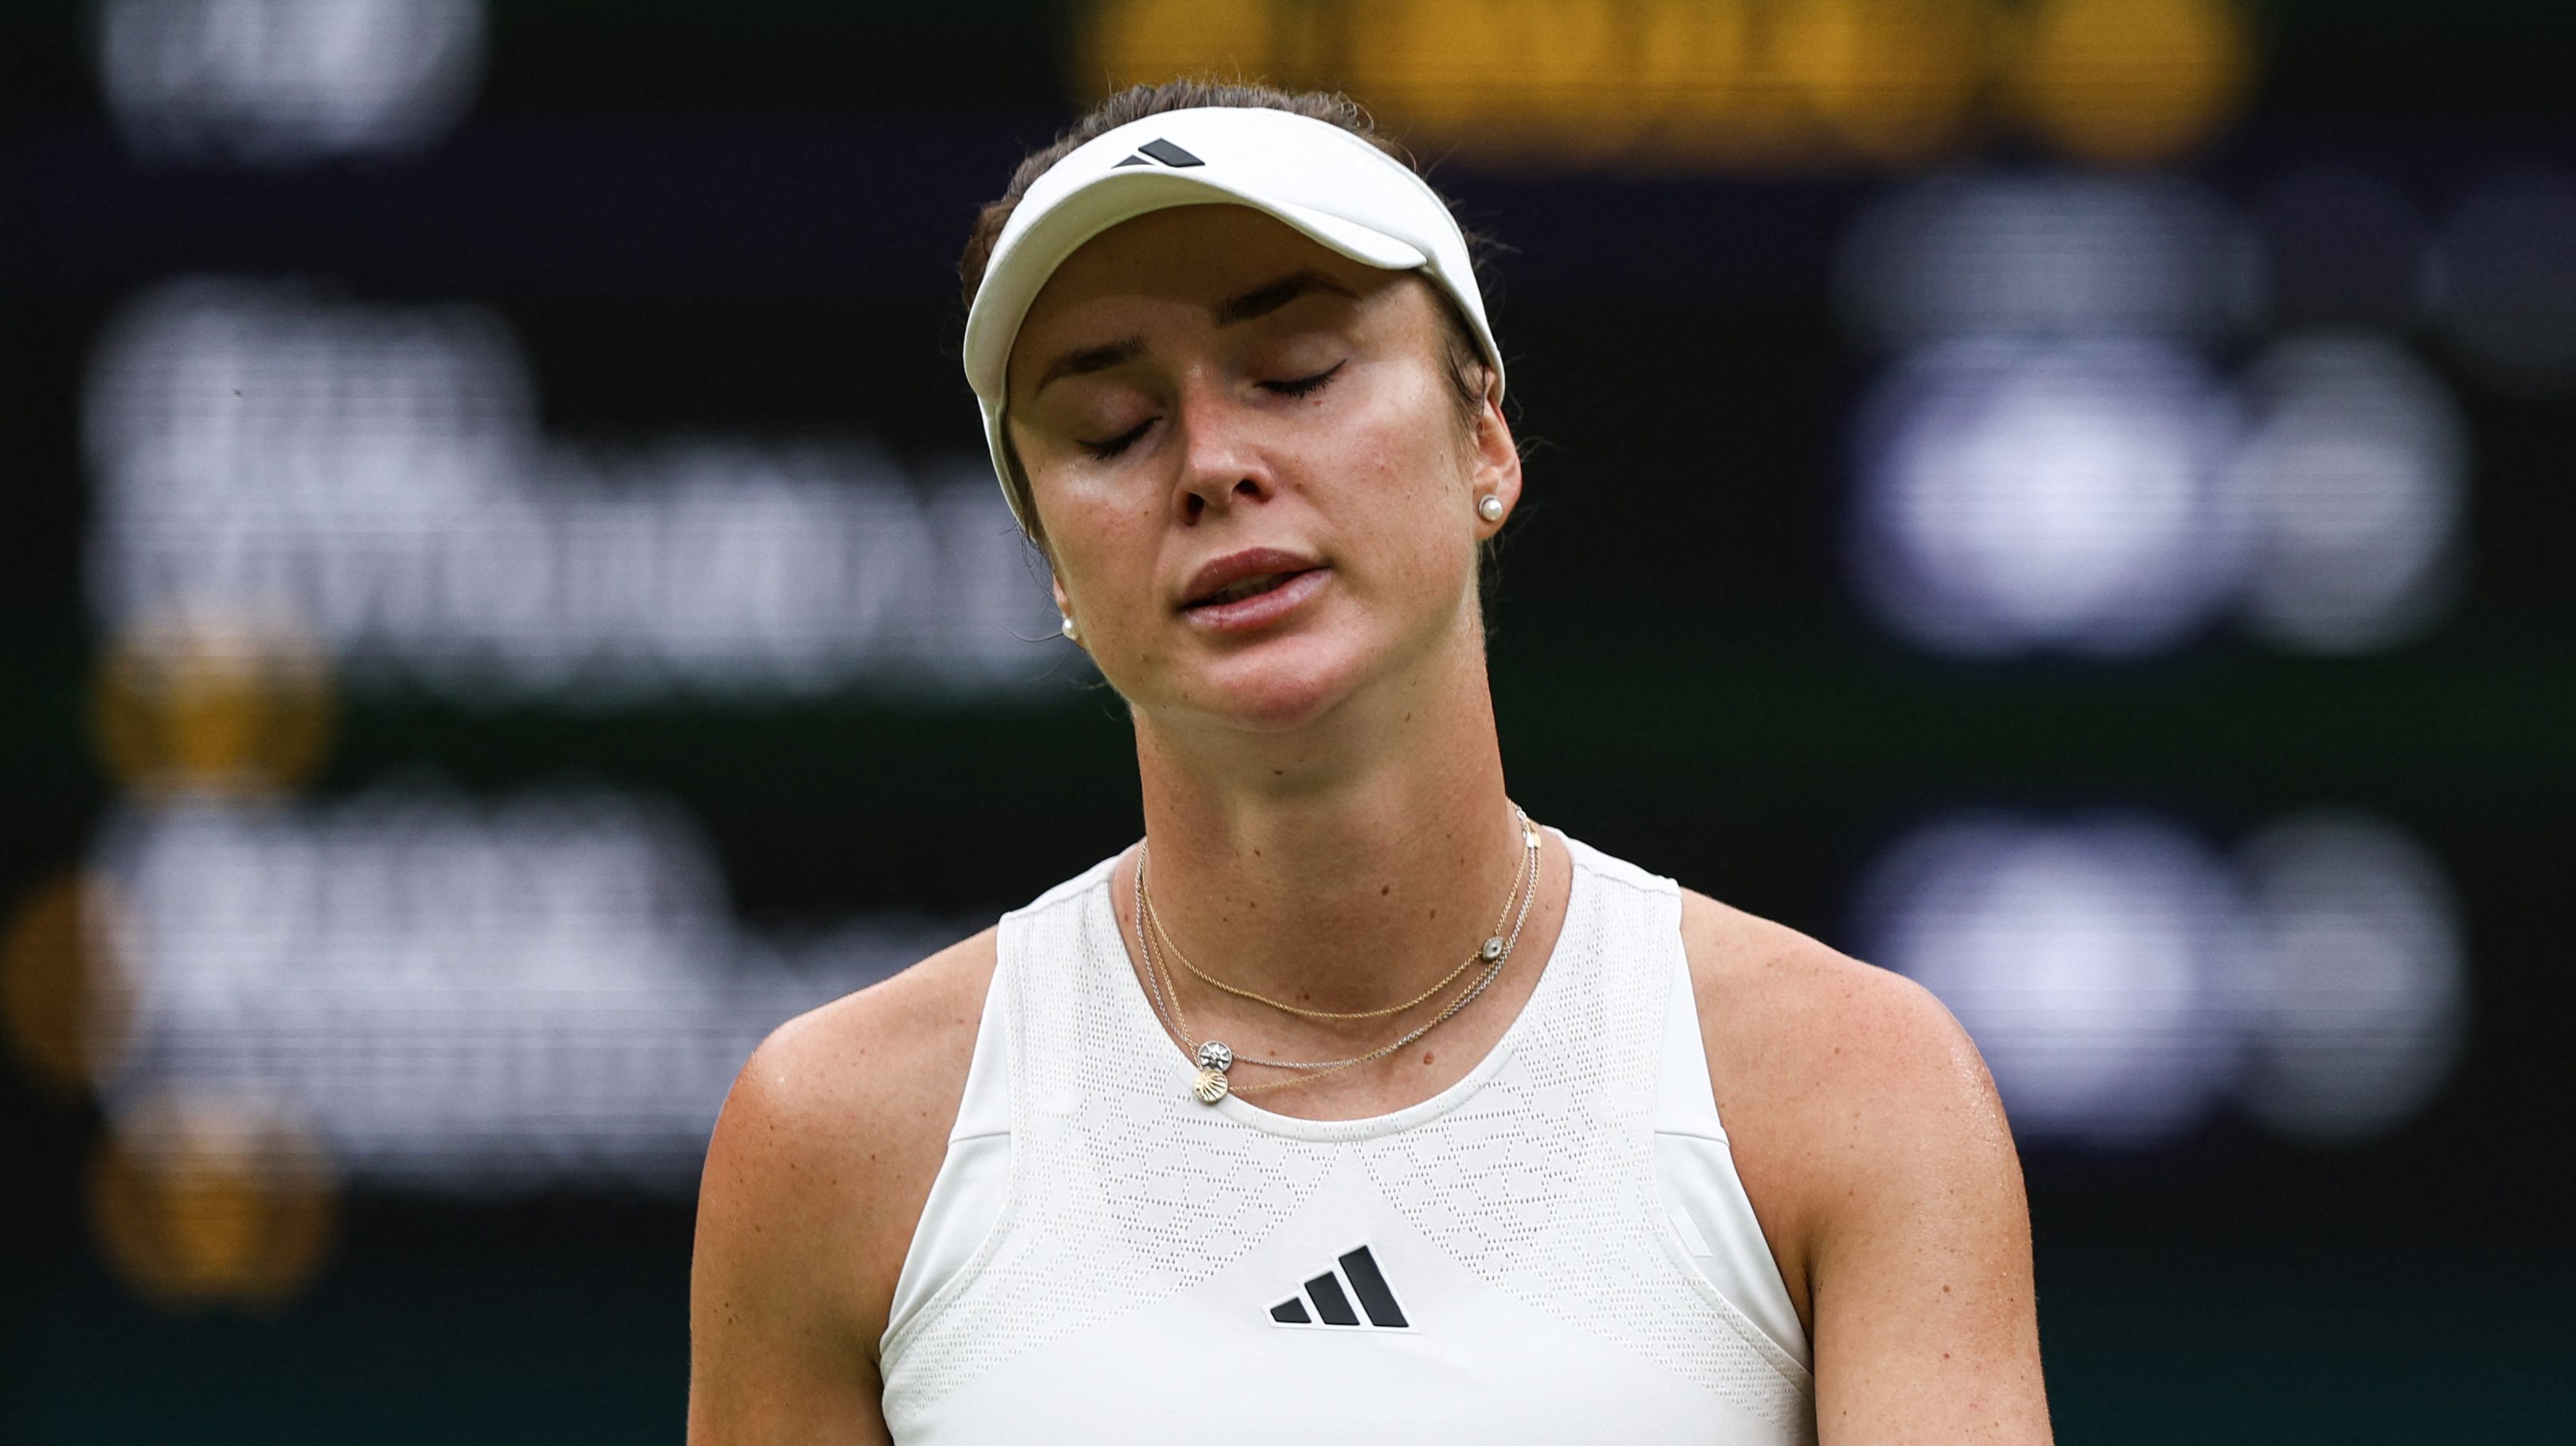 Elina Svitolina voltou a perder com Vondrousová e terminou duas semanas de sonho após o regresso aos courts apenas há três meses